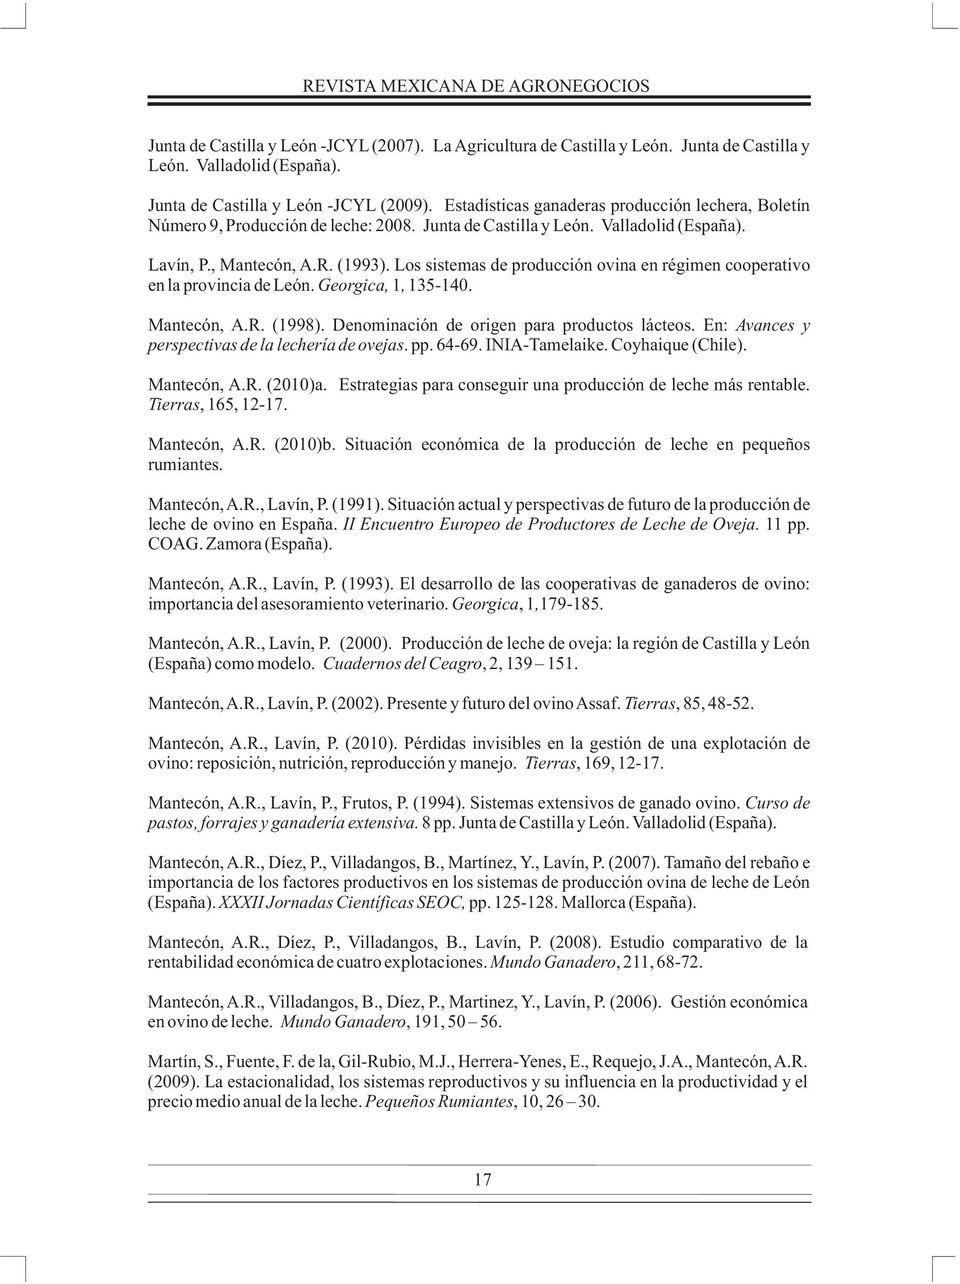 Los sistemas de producción ovina en régimen cooperativo en la provincia de León. Georgica, 1, 135-140. Mantecón, A.R. (1998). Denominación de origen para productos lácteos.